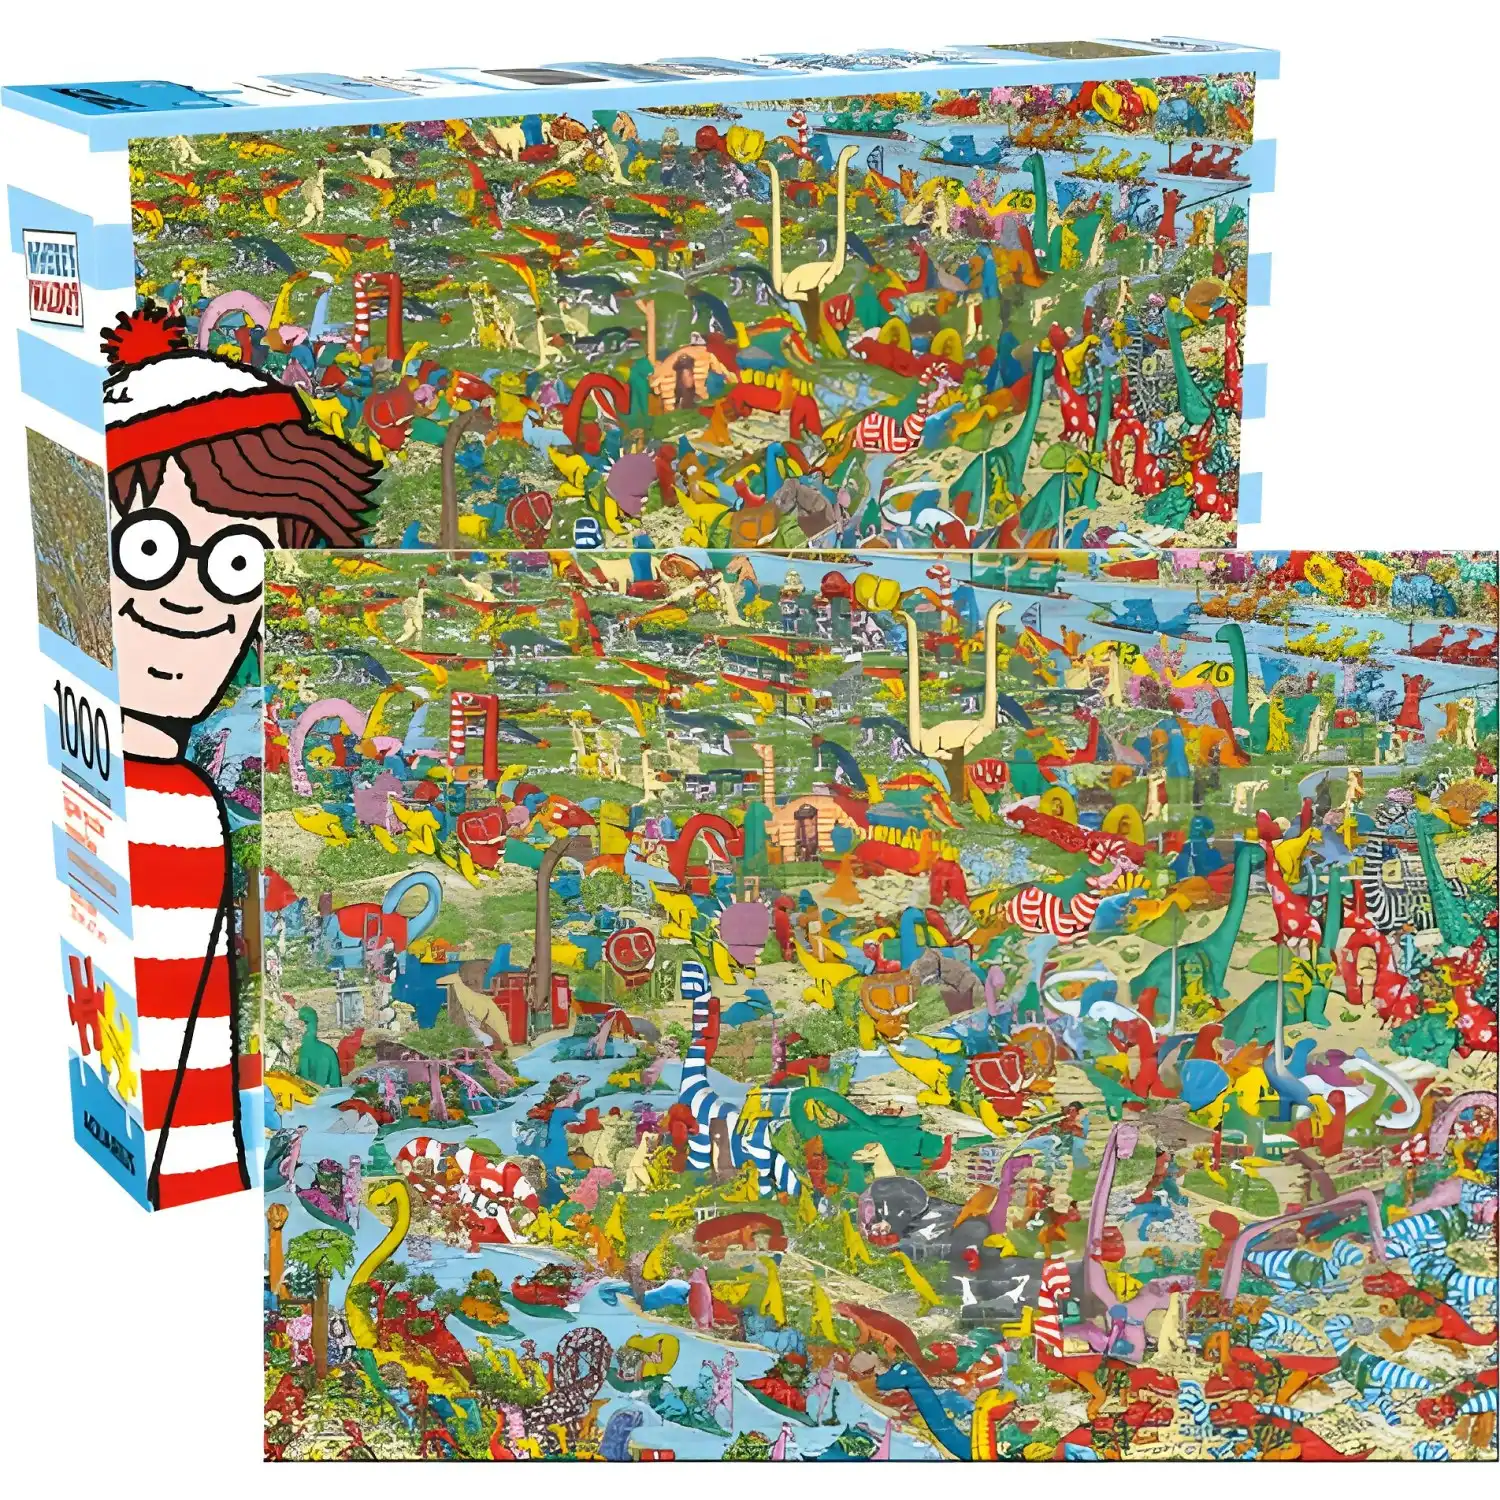 AQUARIUS - Where's Waldo Dinosaurs Jigsaw Puzzle 1000pc